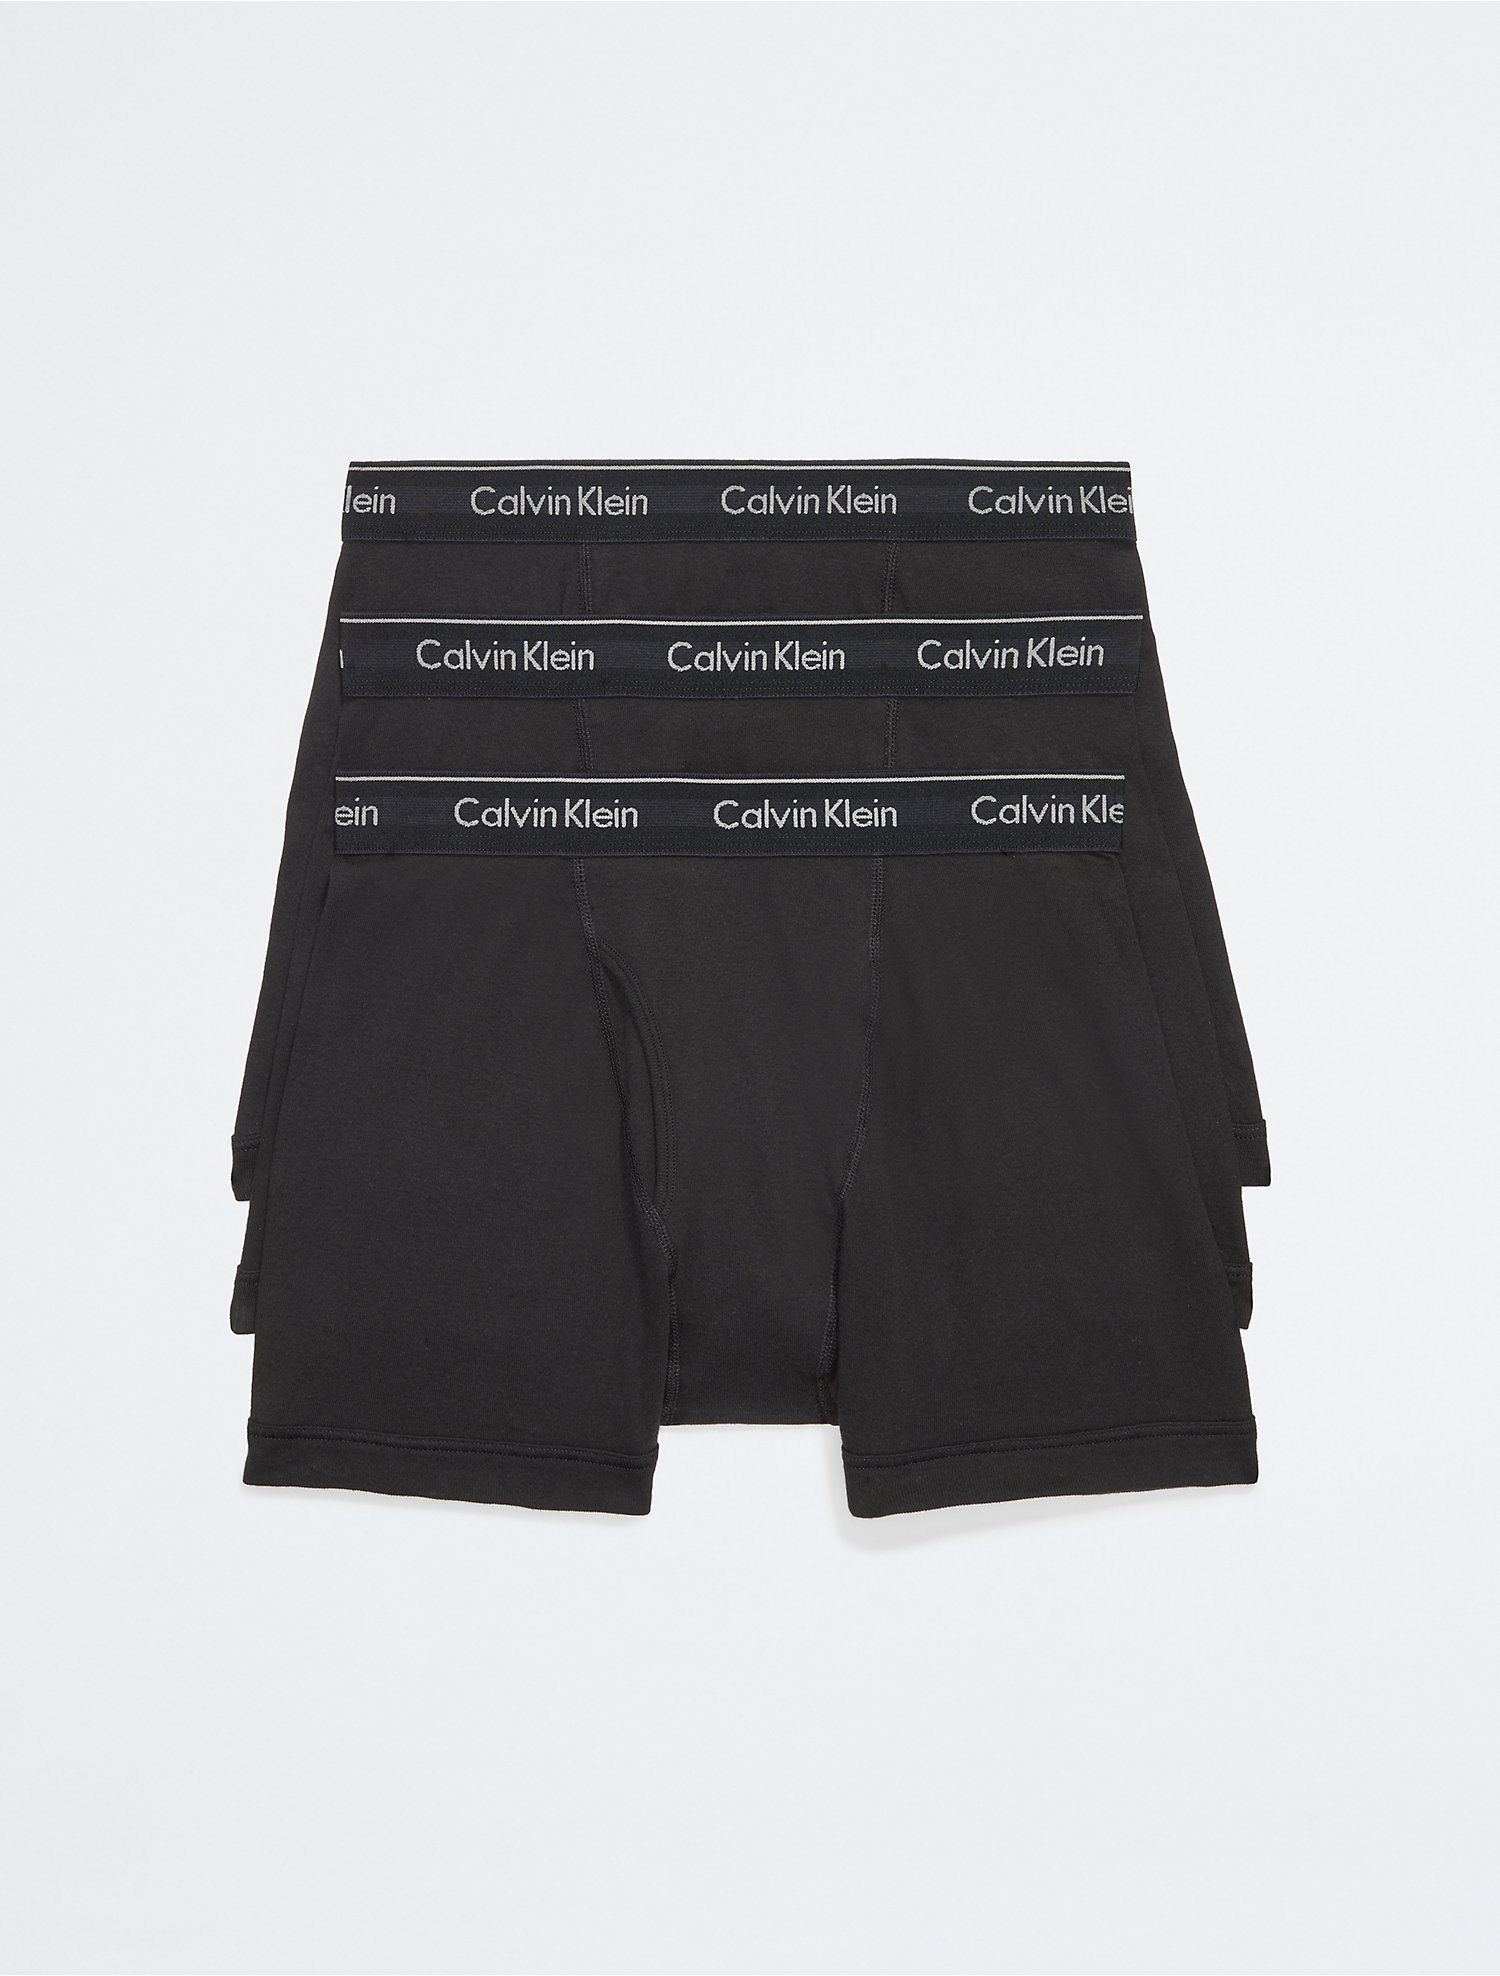 ik heb nodig Moedig behalve voor Cotton Classics 3-Pack Boxer Brief | Calvin Klein® USA